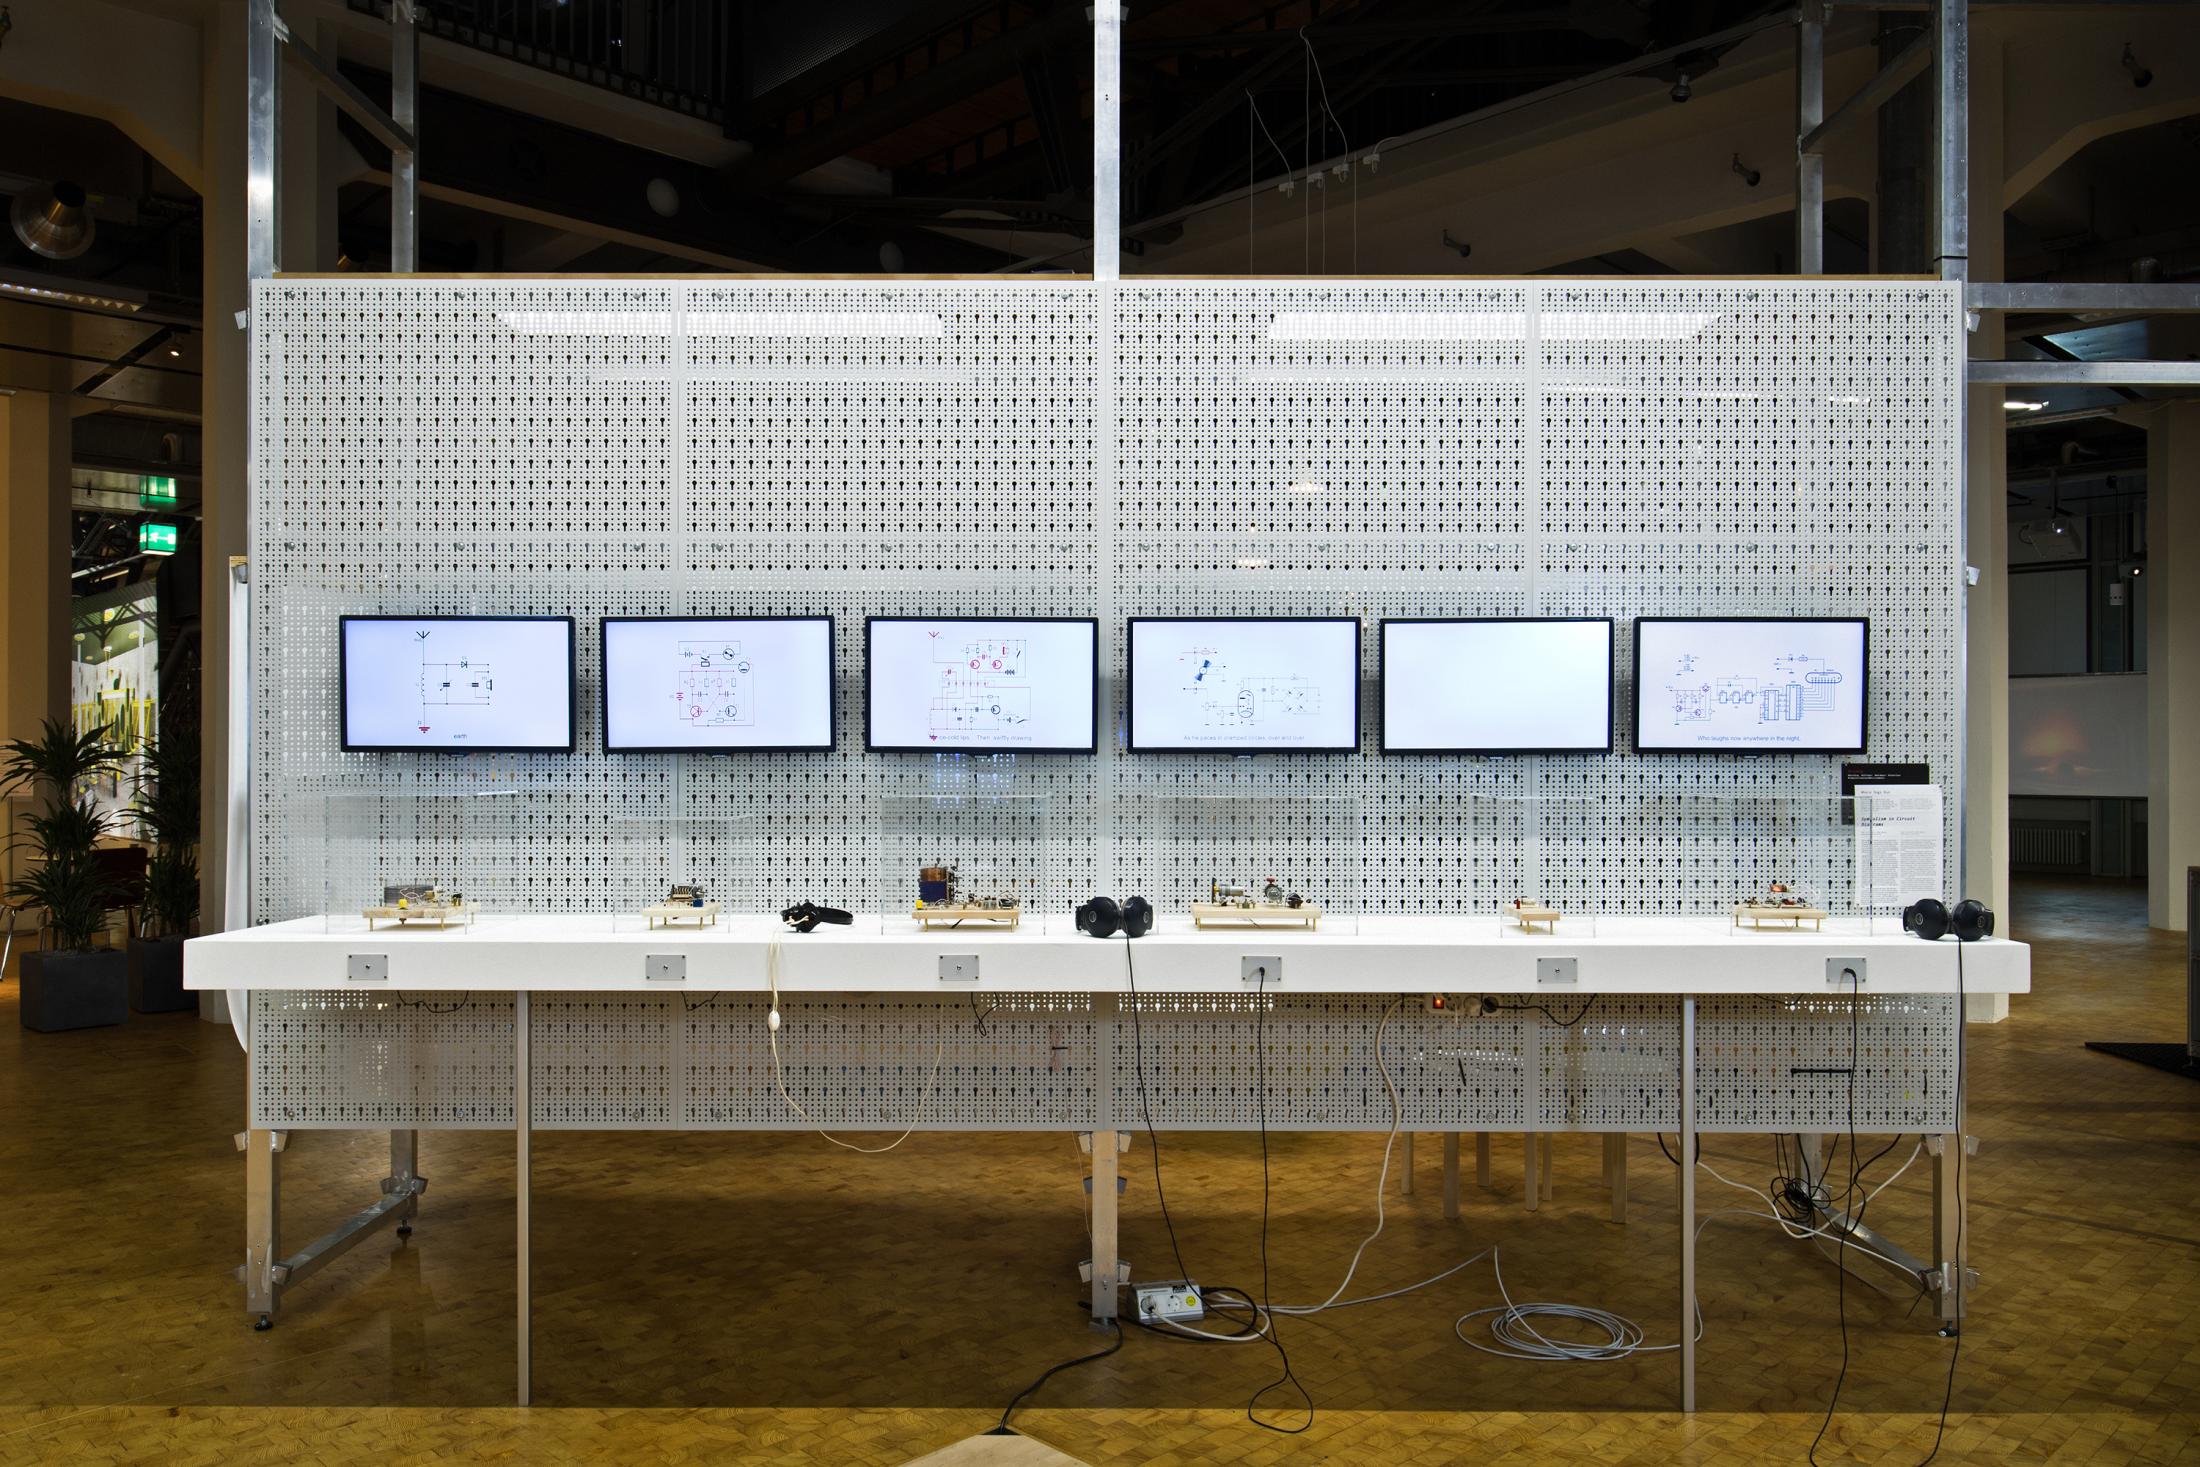 Das Foto zeigt sechs Bildschirme an einer weißen Gitterstruktur mit kleinen Objekten darunter und zwei Kopfhörern